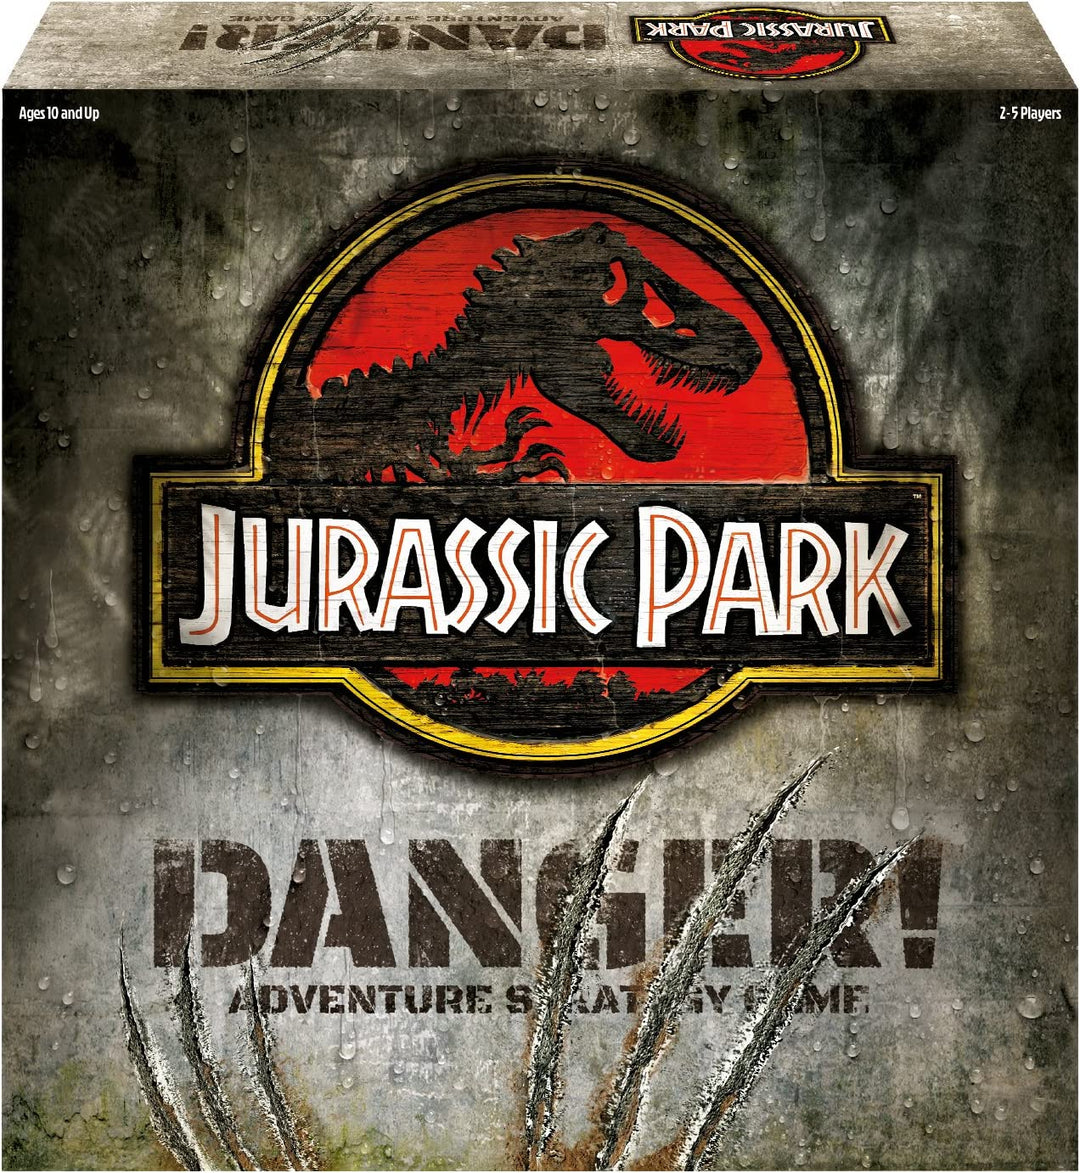 Ravensburger Jurassic Park Gefahr! - Abenteuer-Strategiespiel